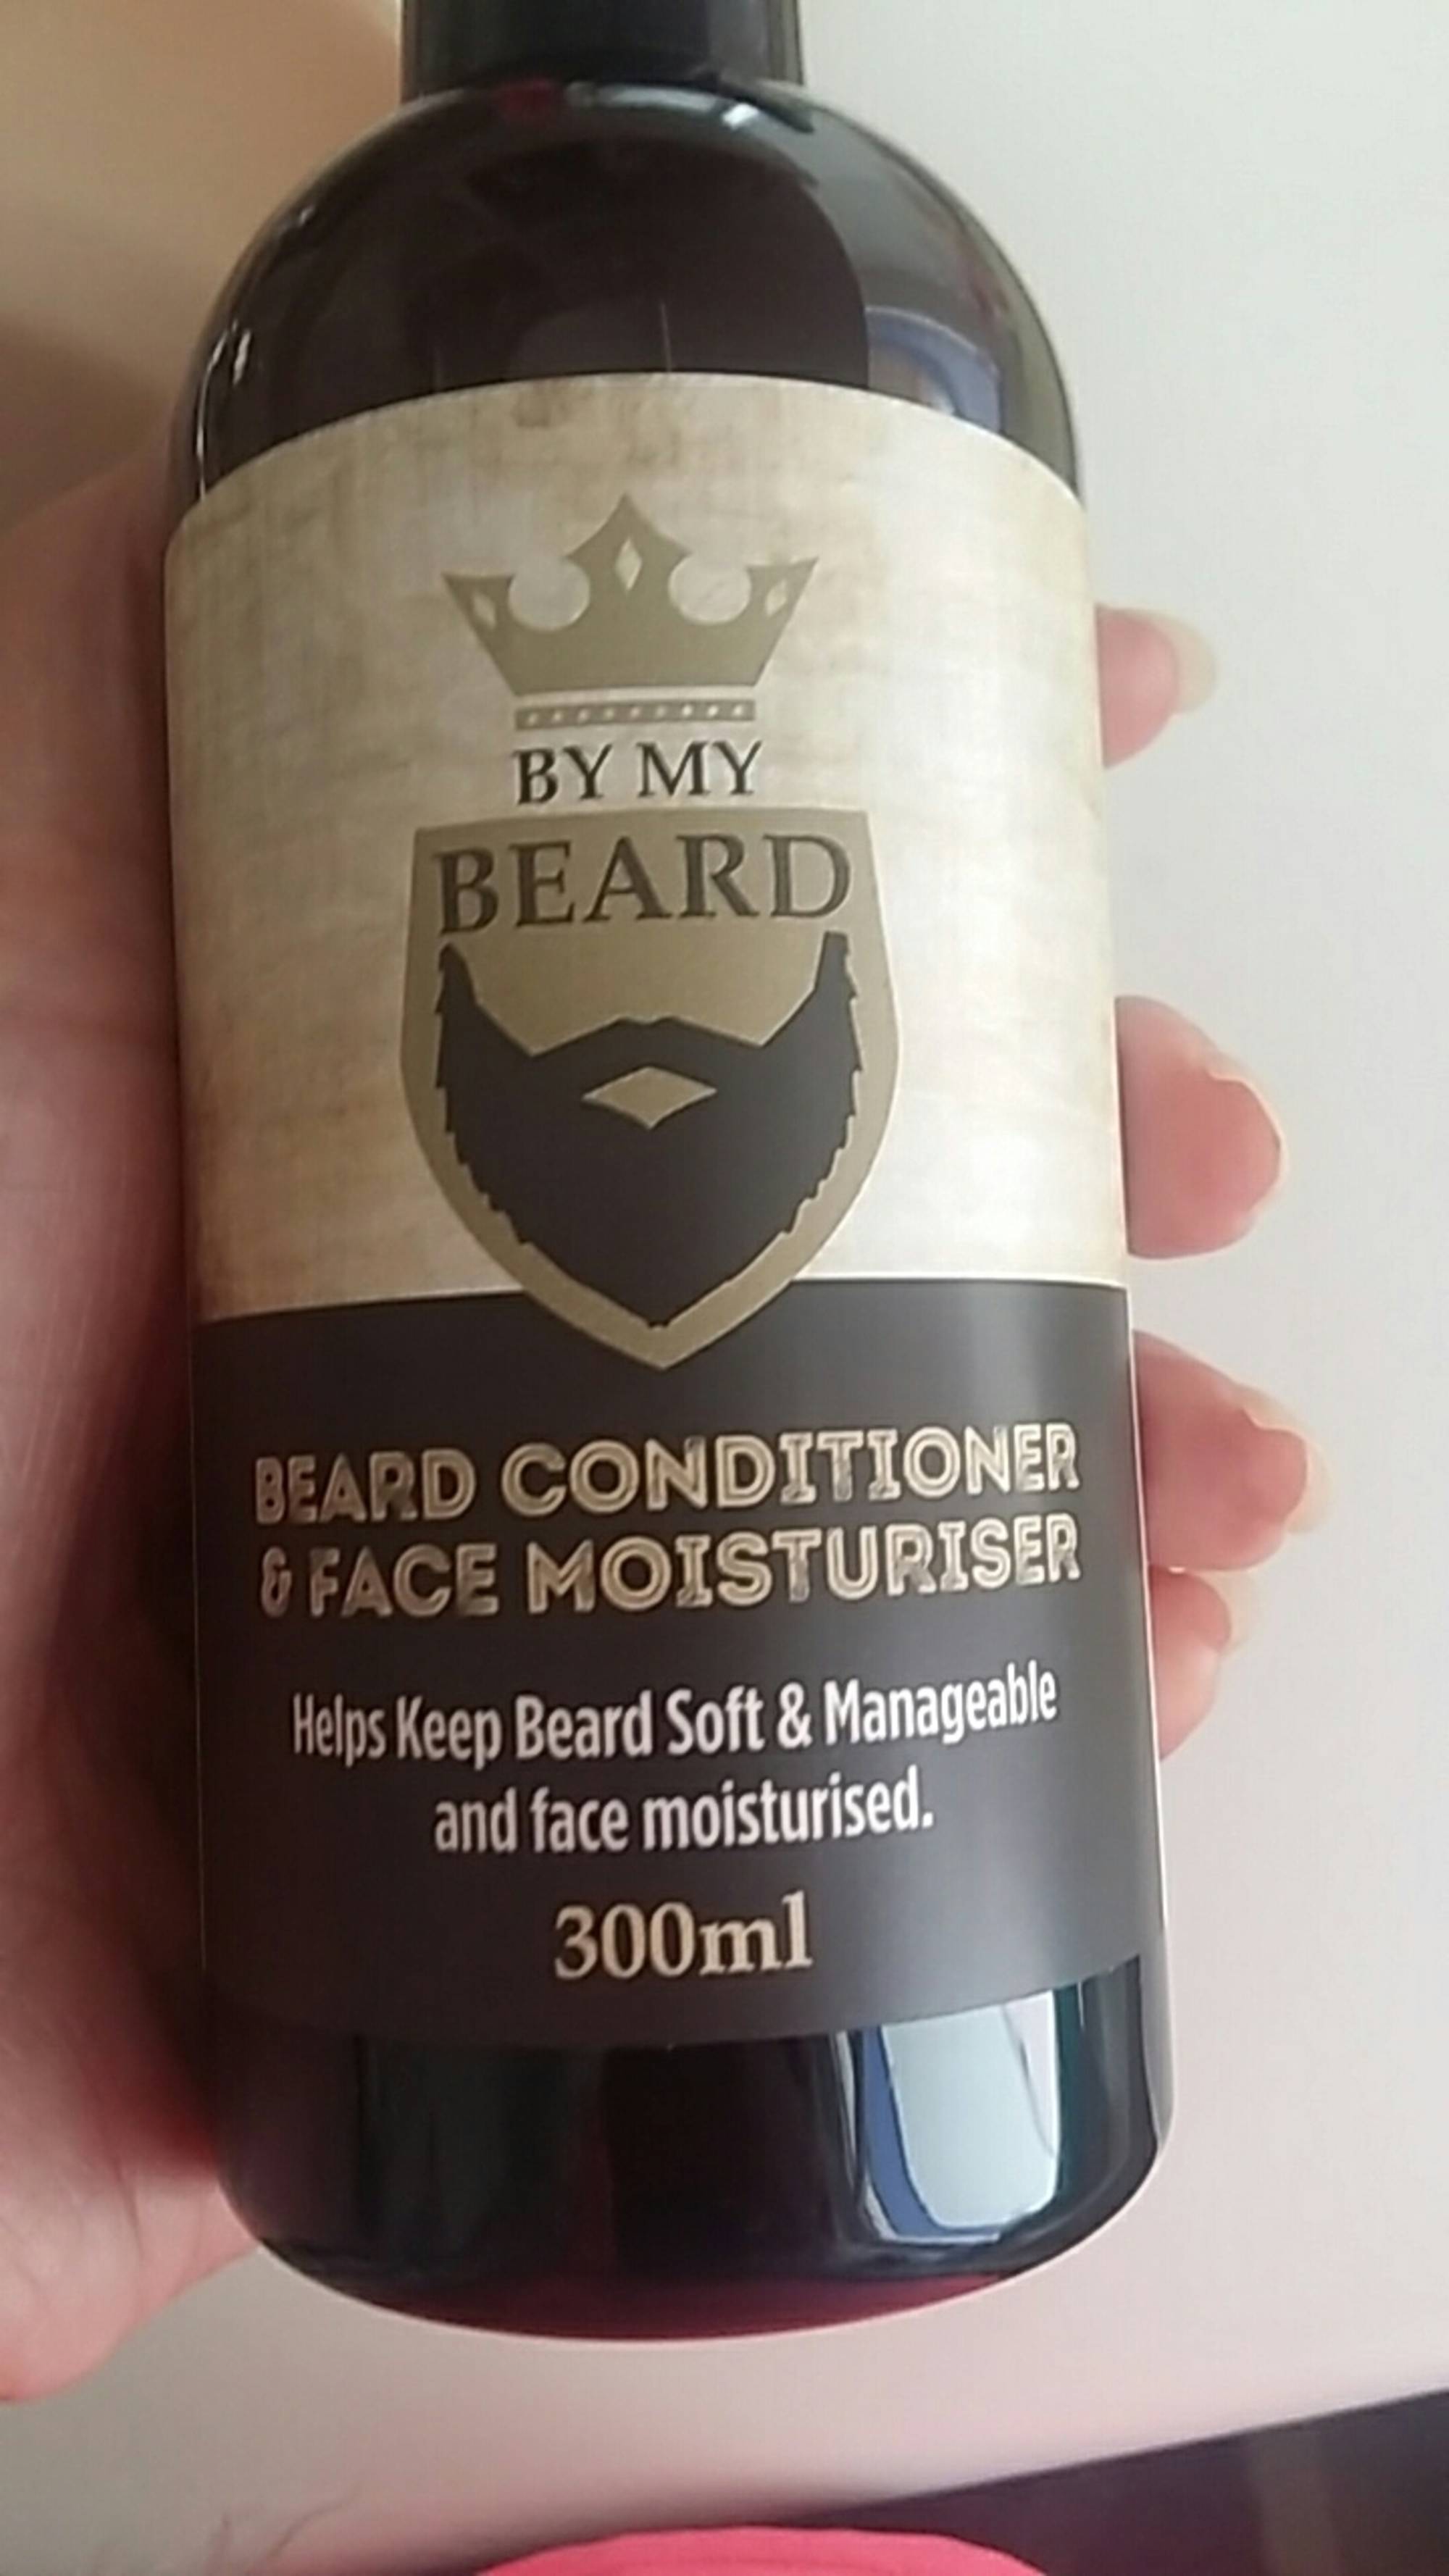 BY ME BEARD - Beard conditioner & face moisturiser